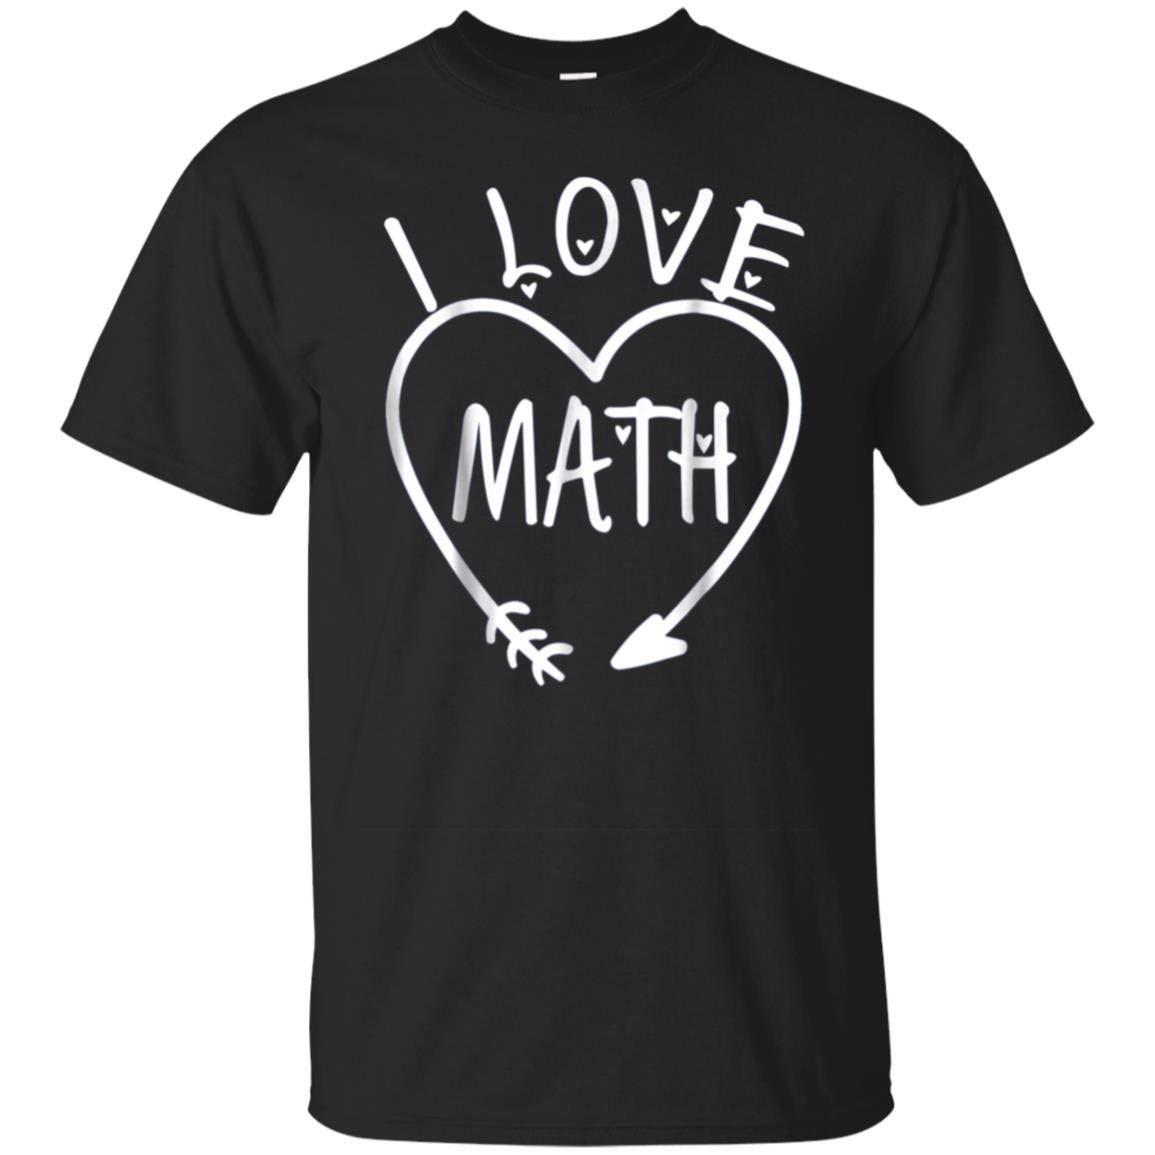 I Love Math Tshirt For Teas Hearts Love Math